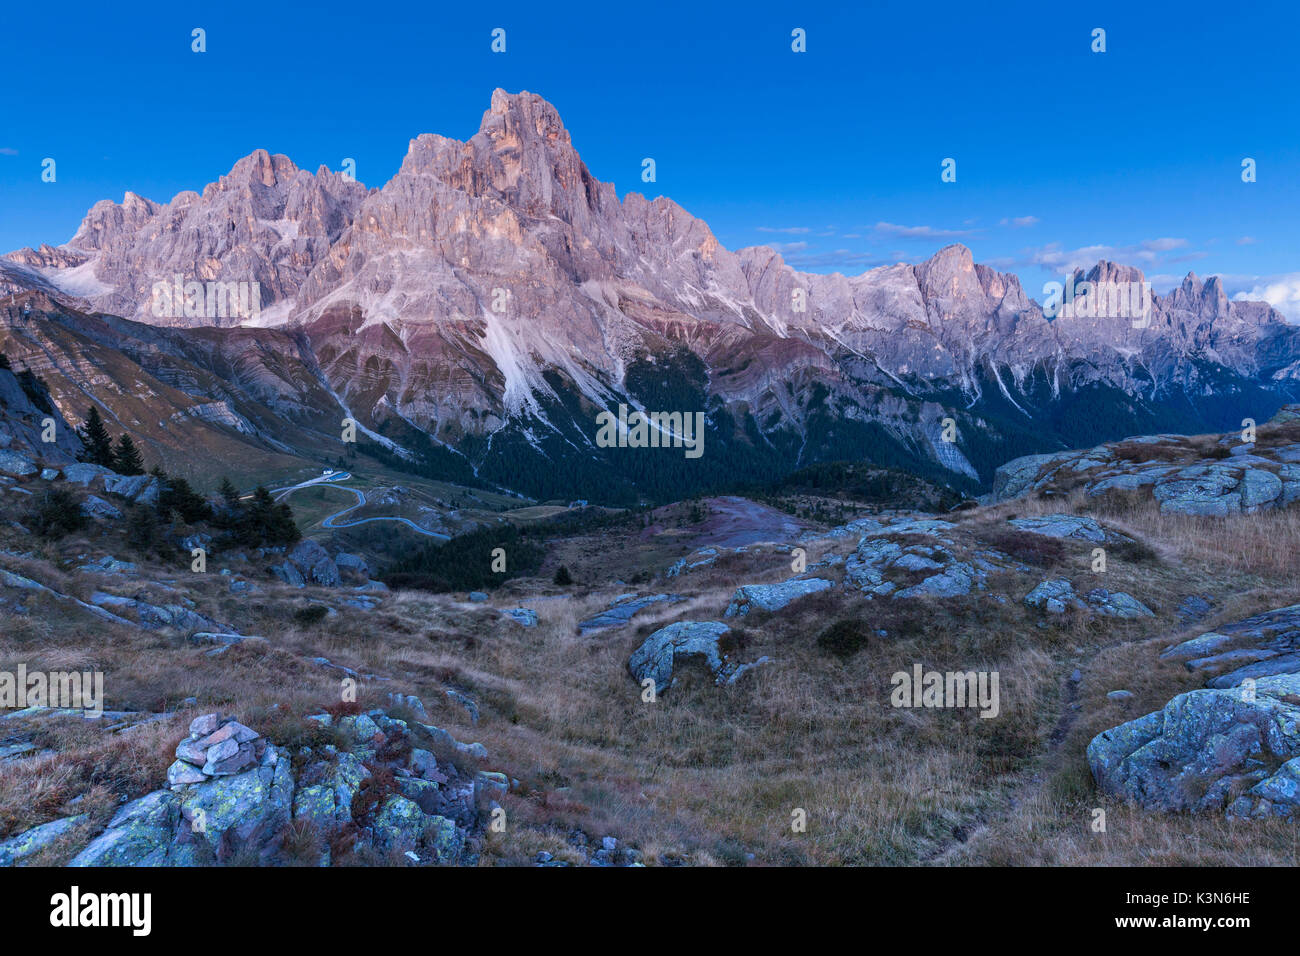 L'Europa, Italia, Trentino, Trento, Passo Rolle. Le Pale di San Martino al tramonto con il Cimon della Pala, come si vede dalla Cavallazza. Foto Stock